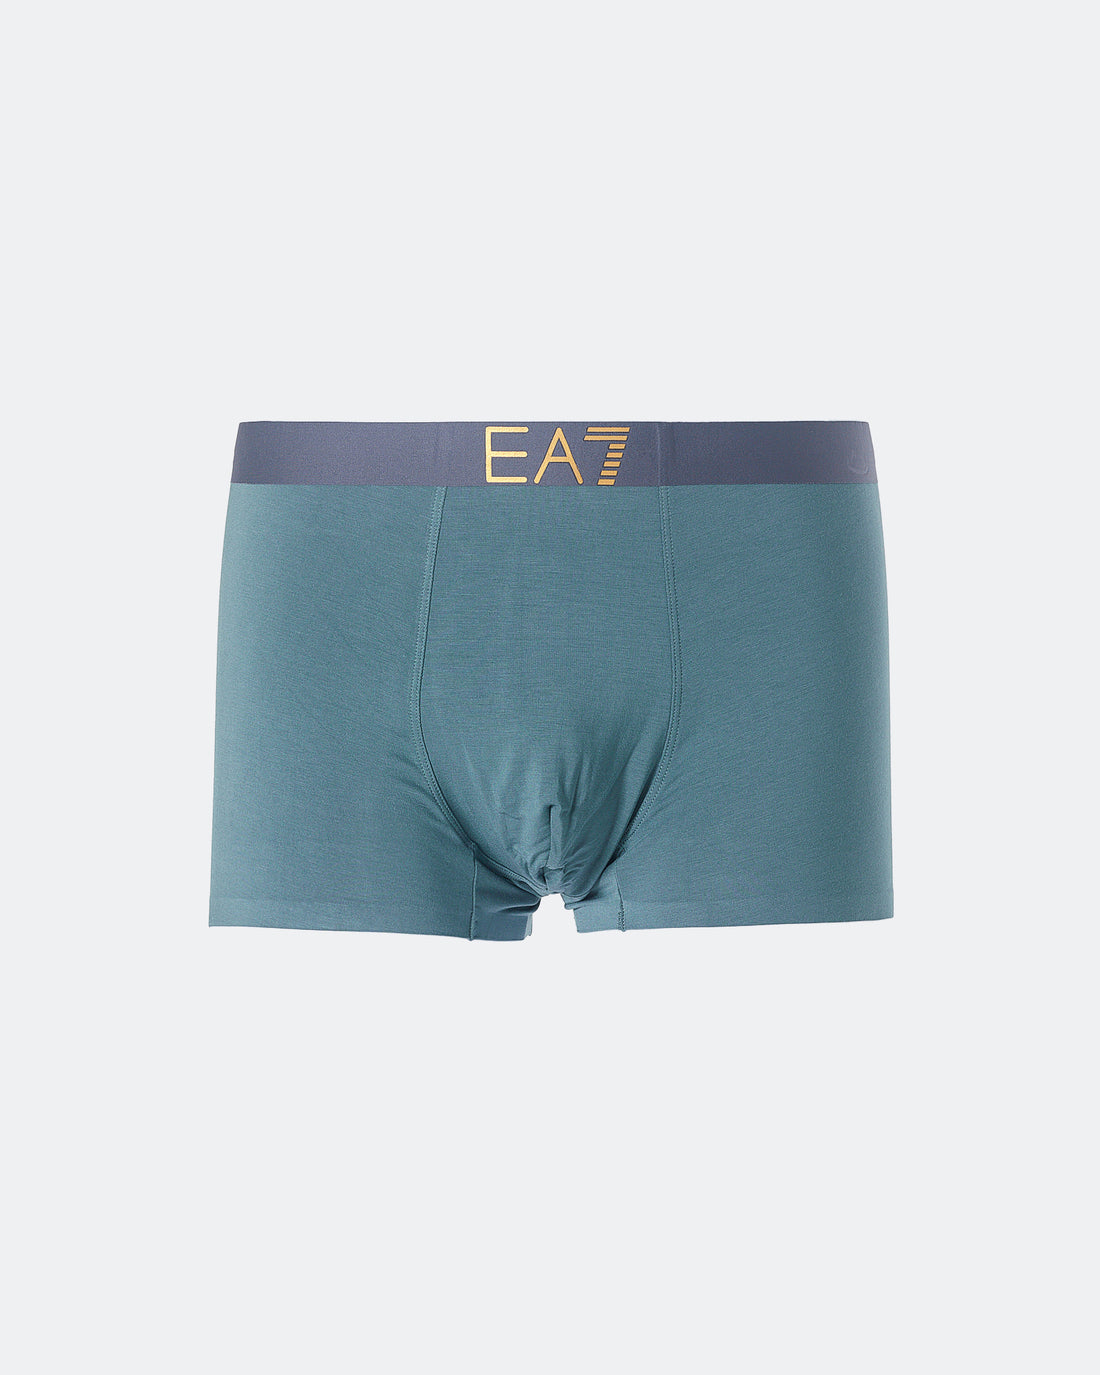 ARM EA7 Logo Printed Men Green Underwear 7.50